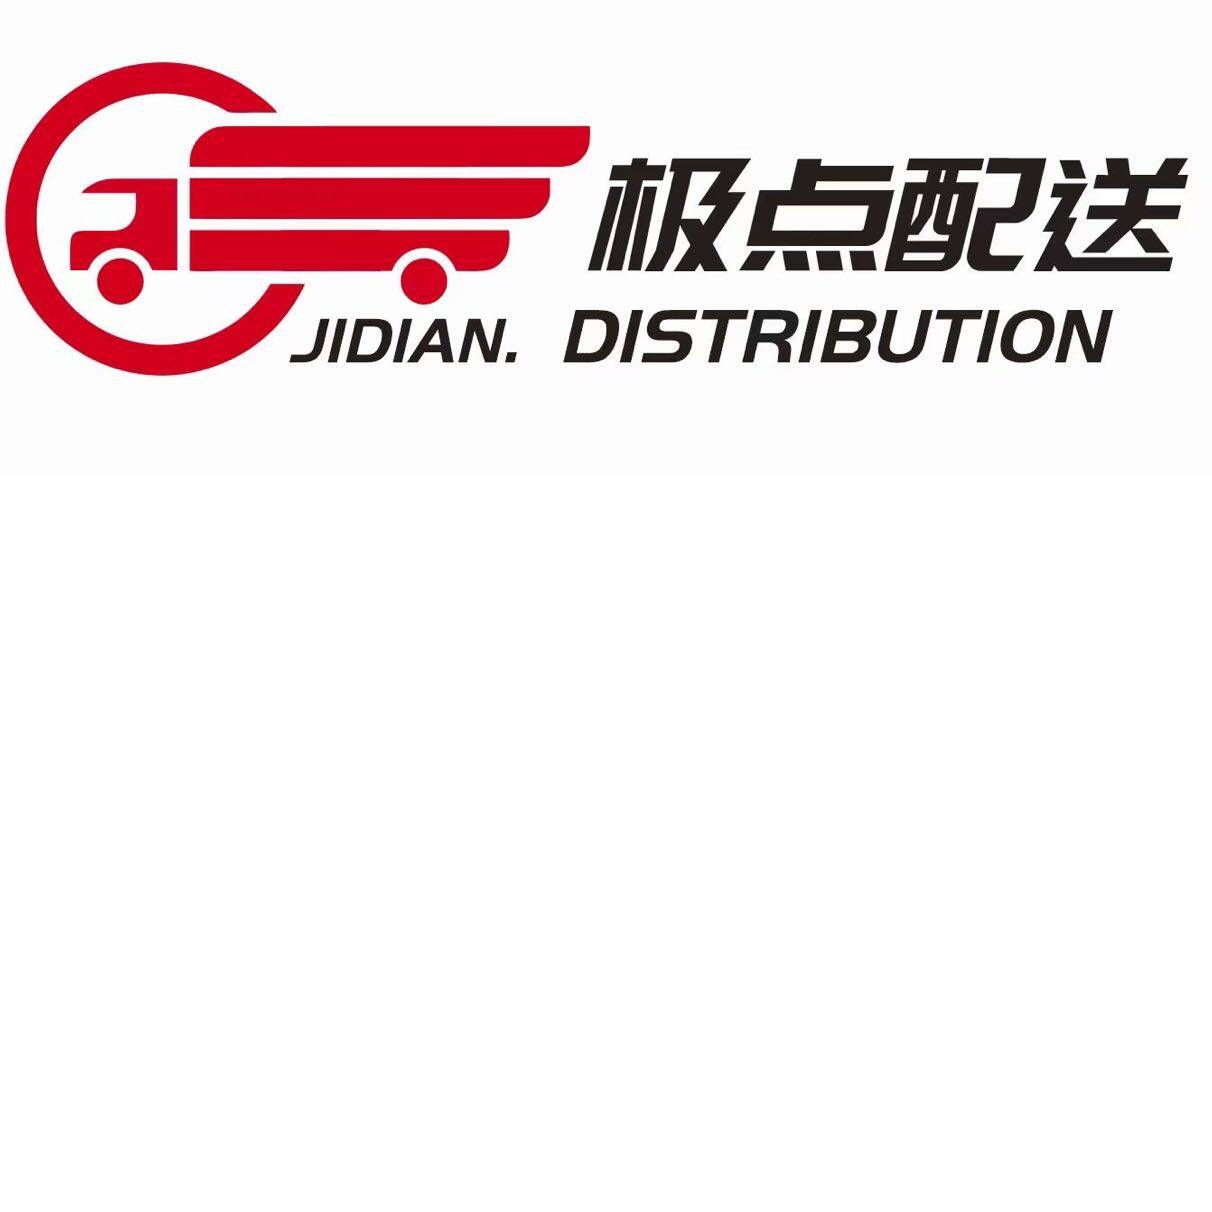 郑州极点供应链管理有限公司logo